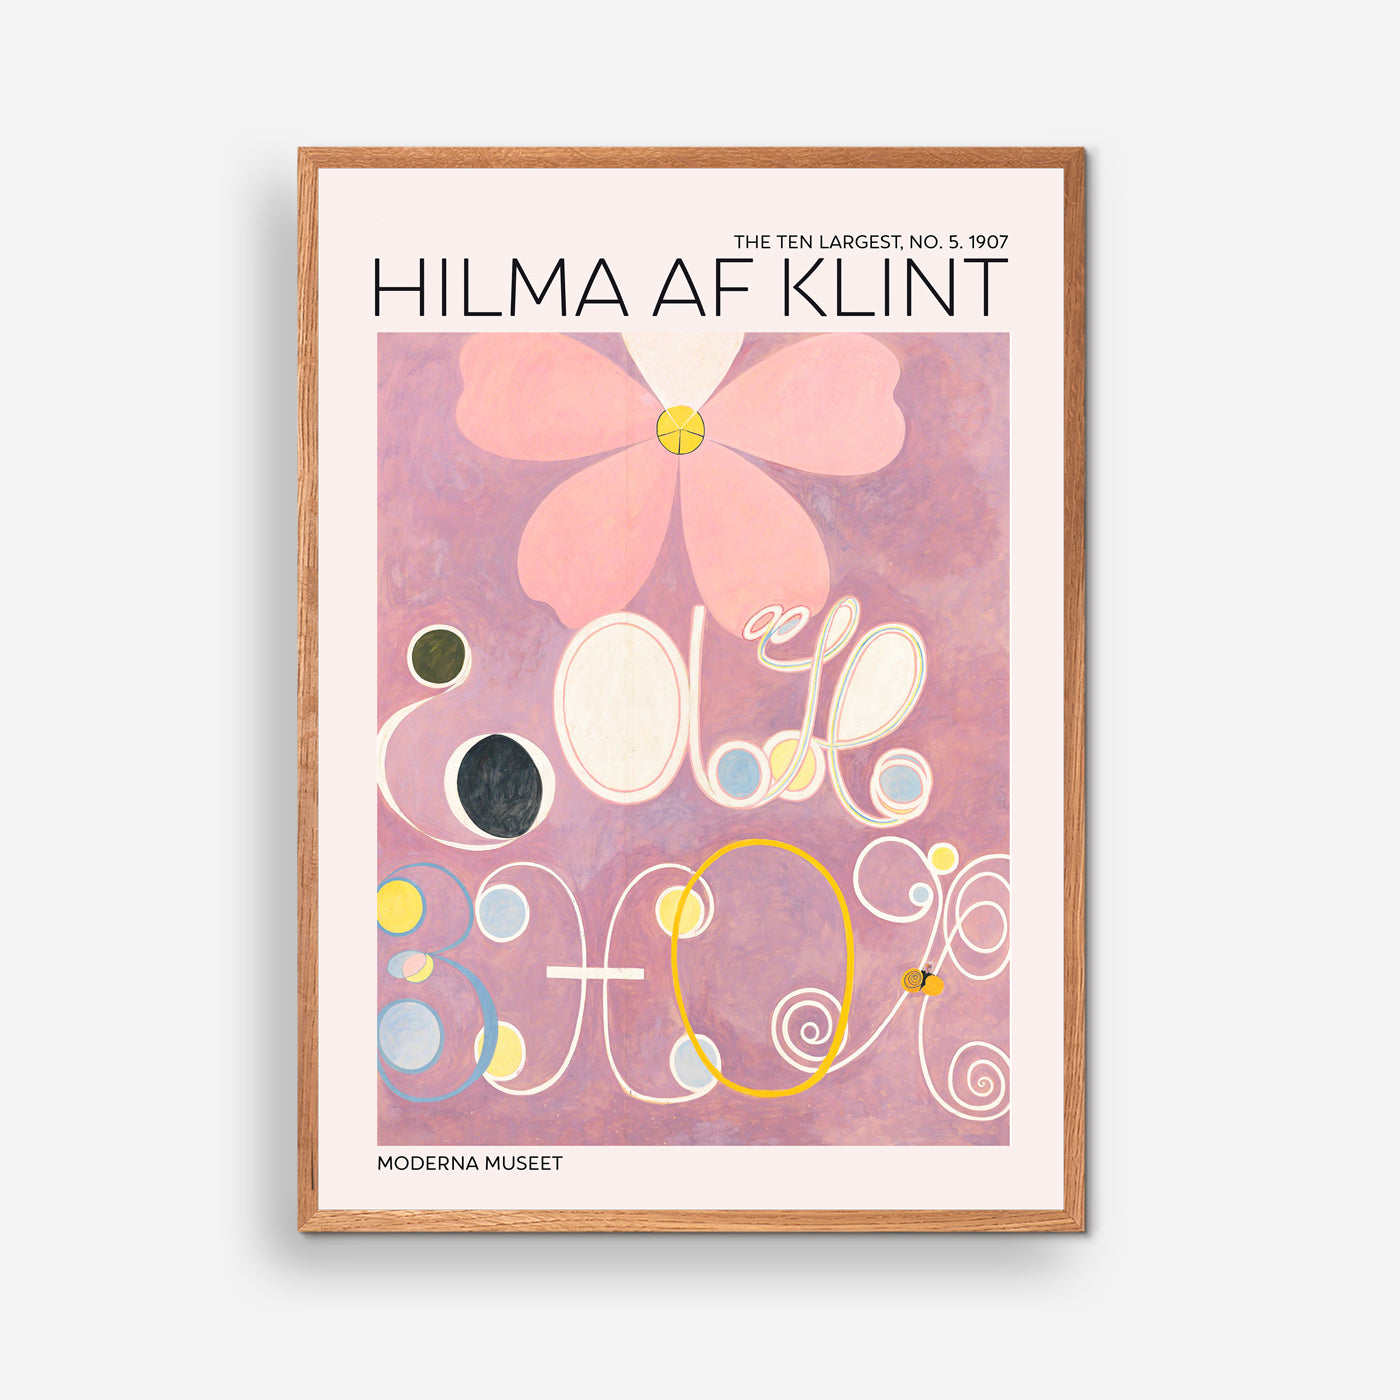 The Ten Largest No. 5 - Hilma Of Klint